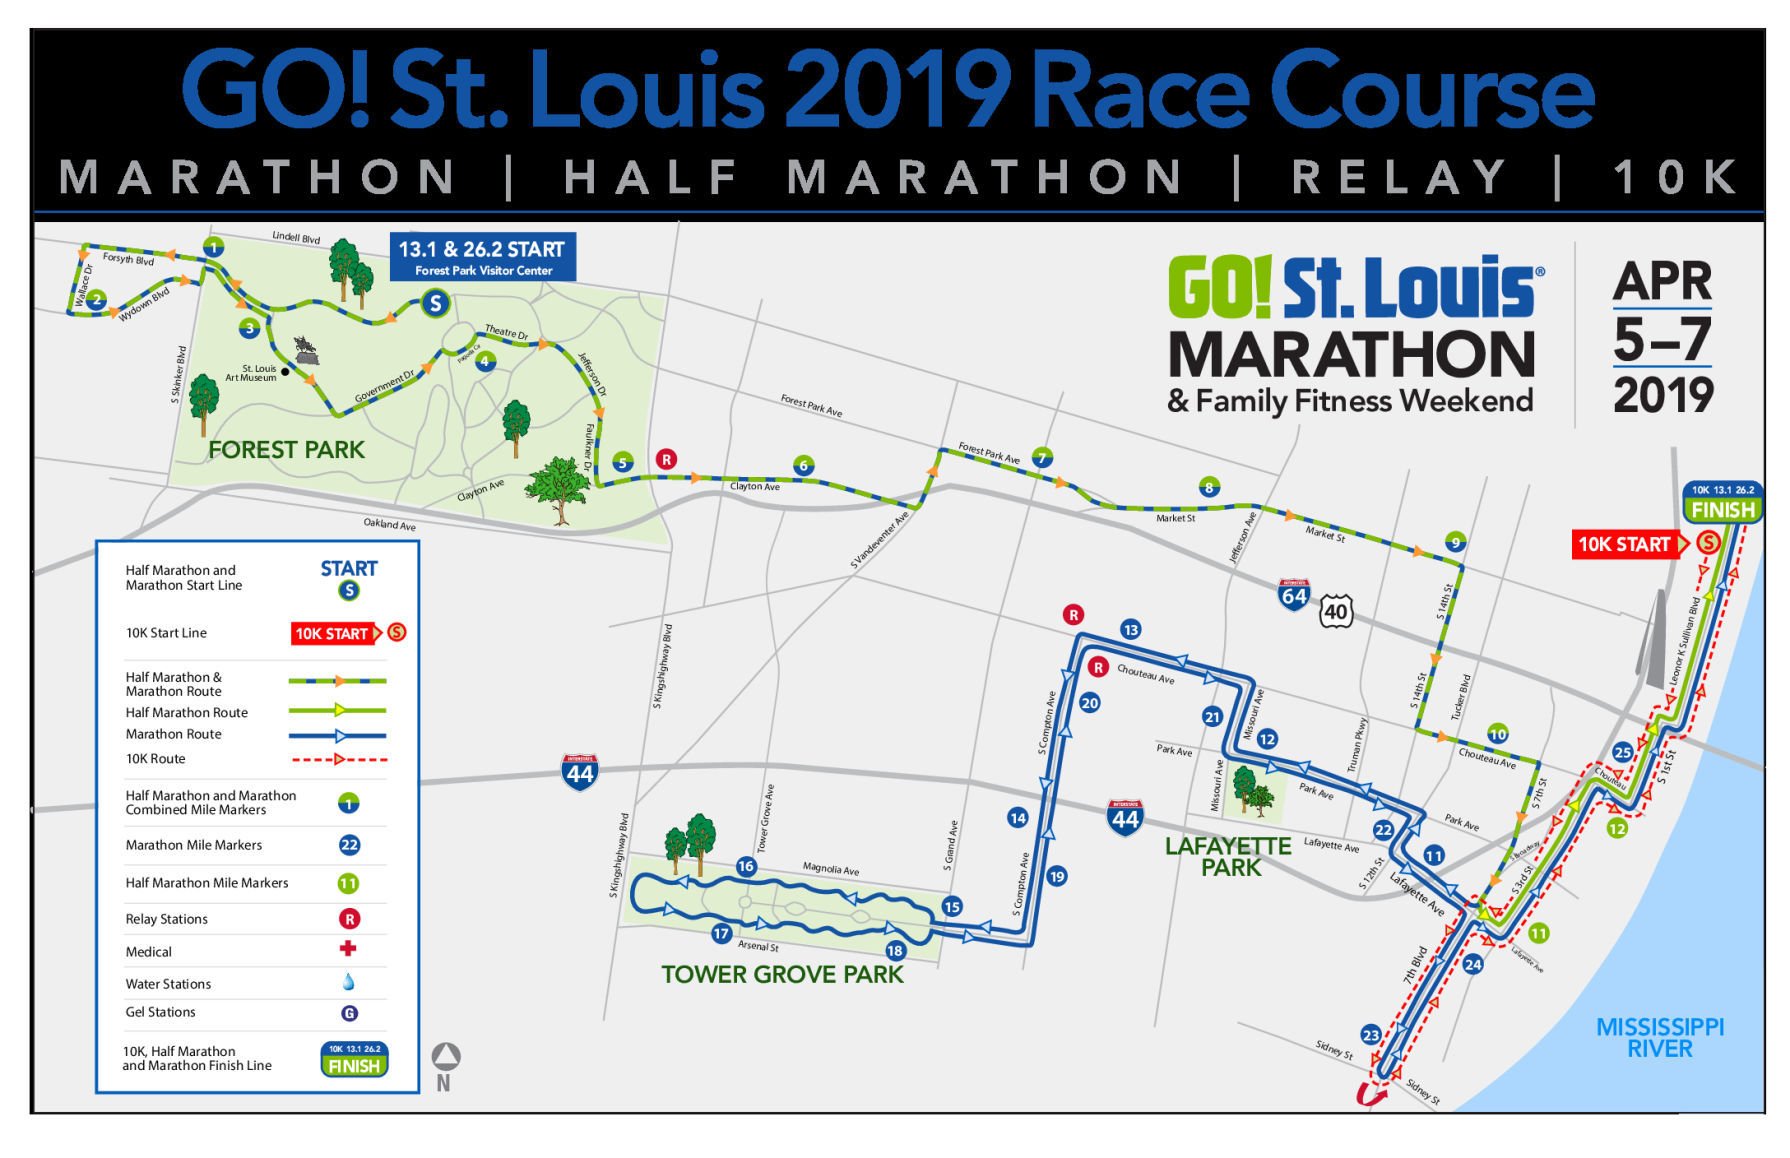 St. Louis announces change to marathon 